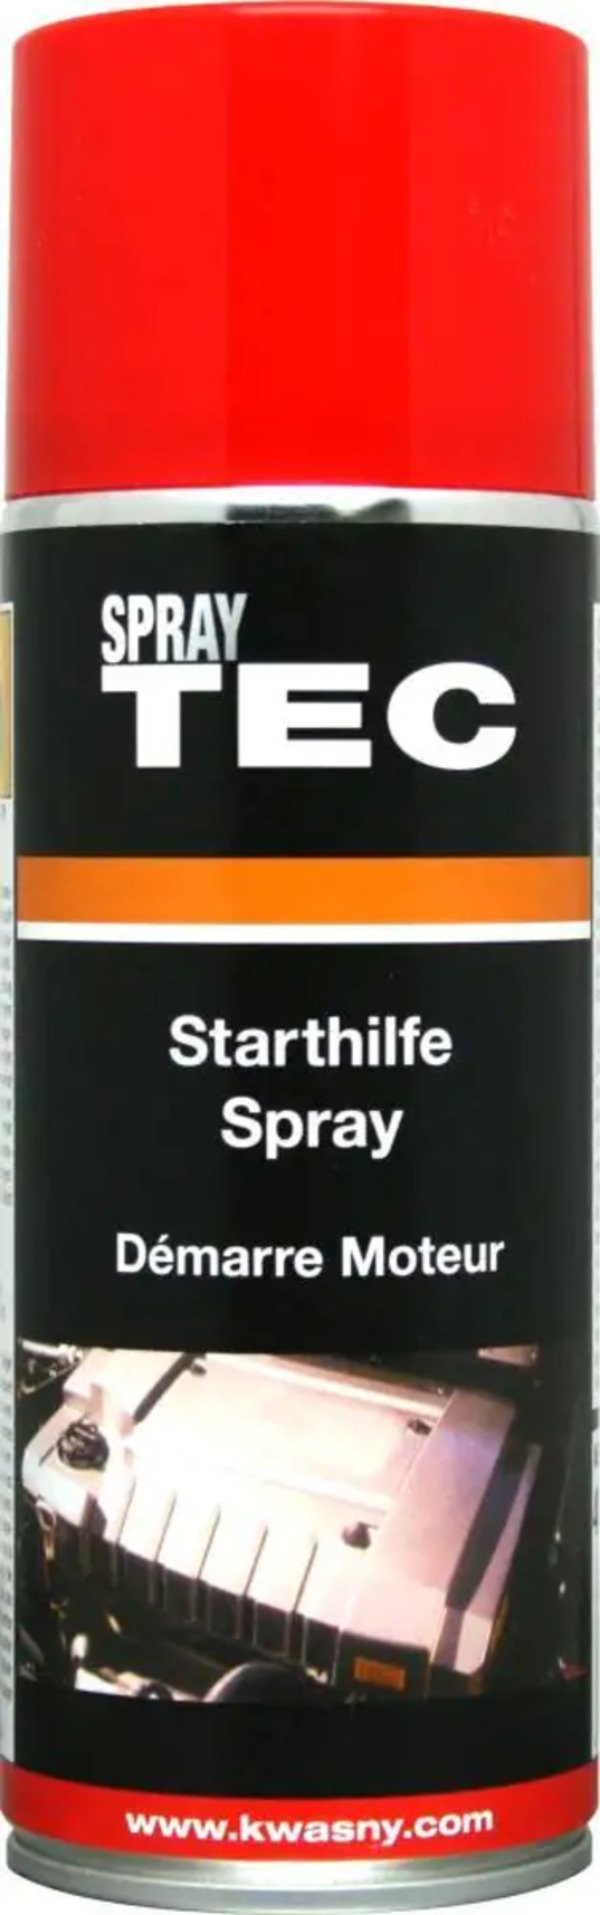 Bild 1 von SprayTEC Starthilfe Spray 400ml